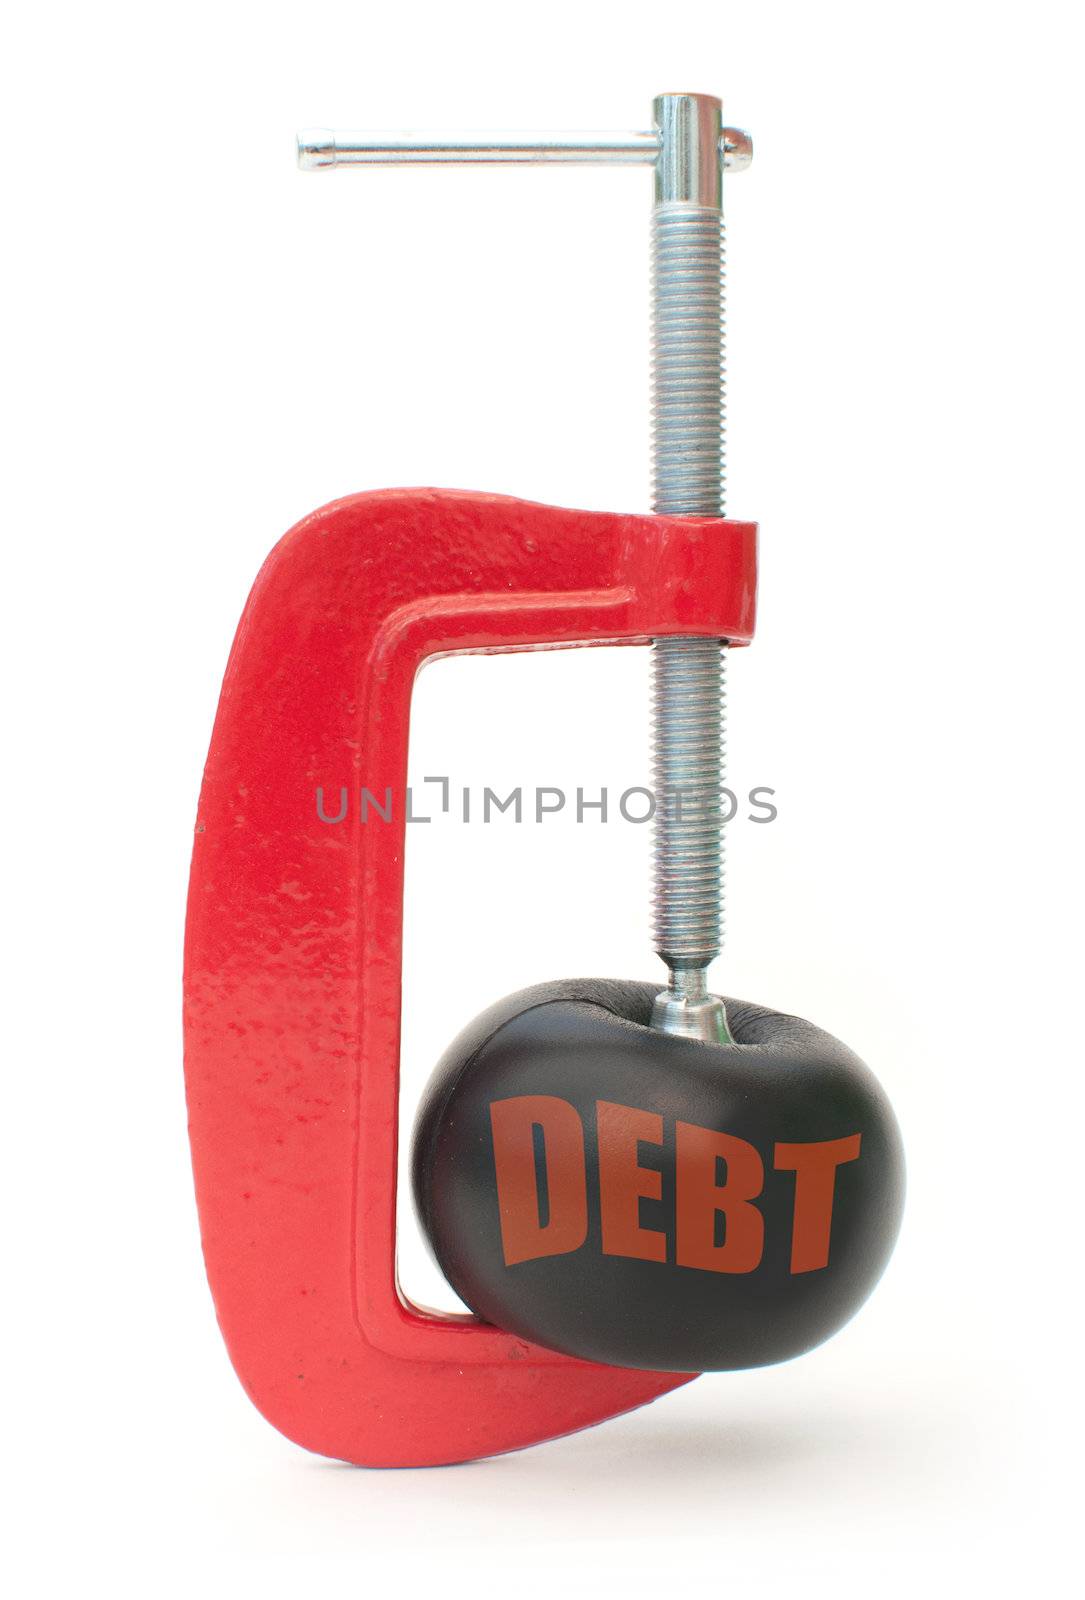 Debt reduction by unikpix